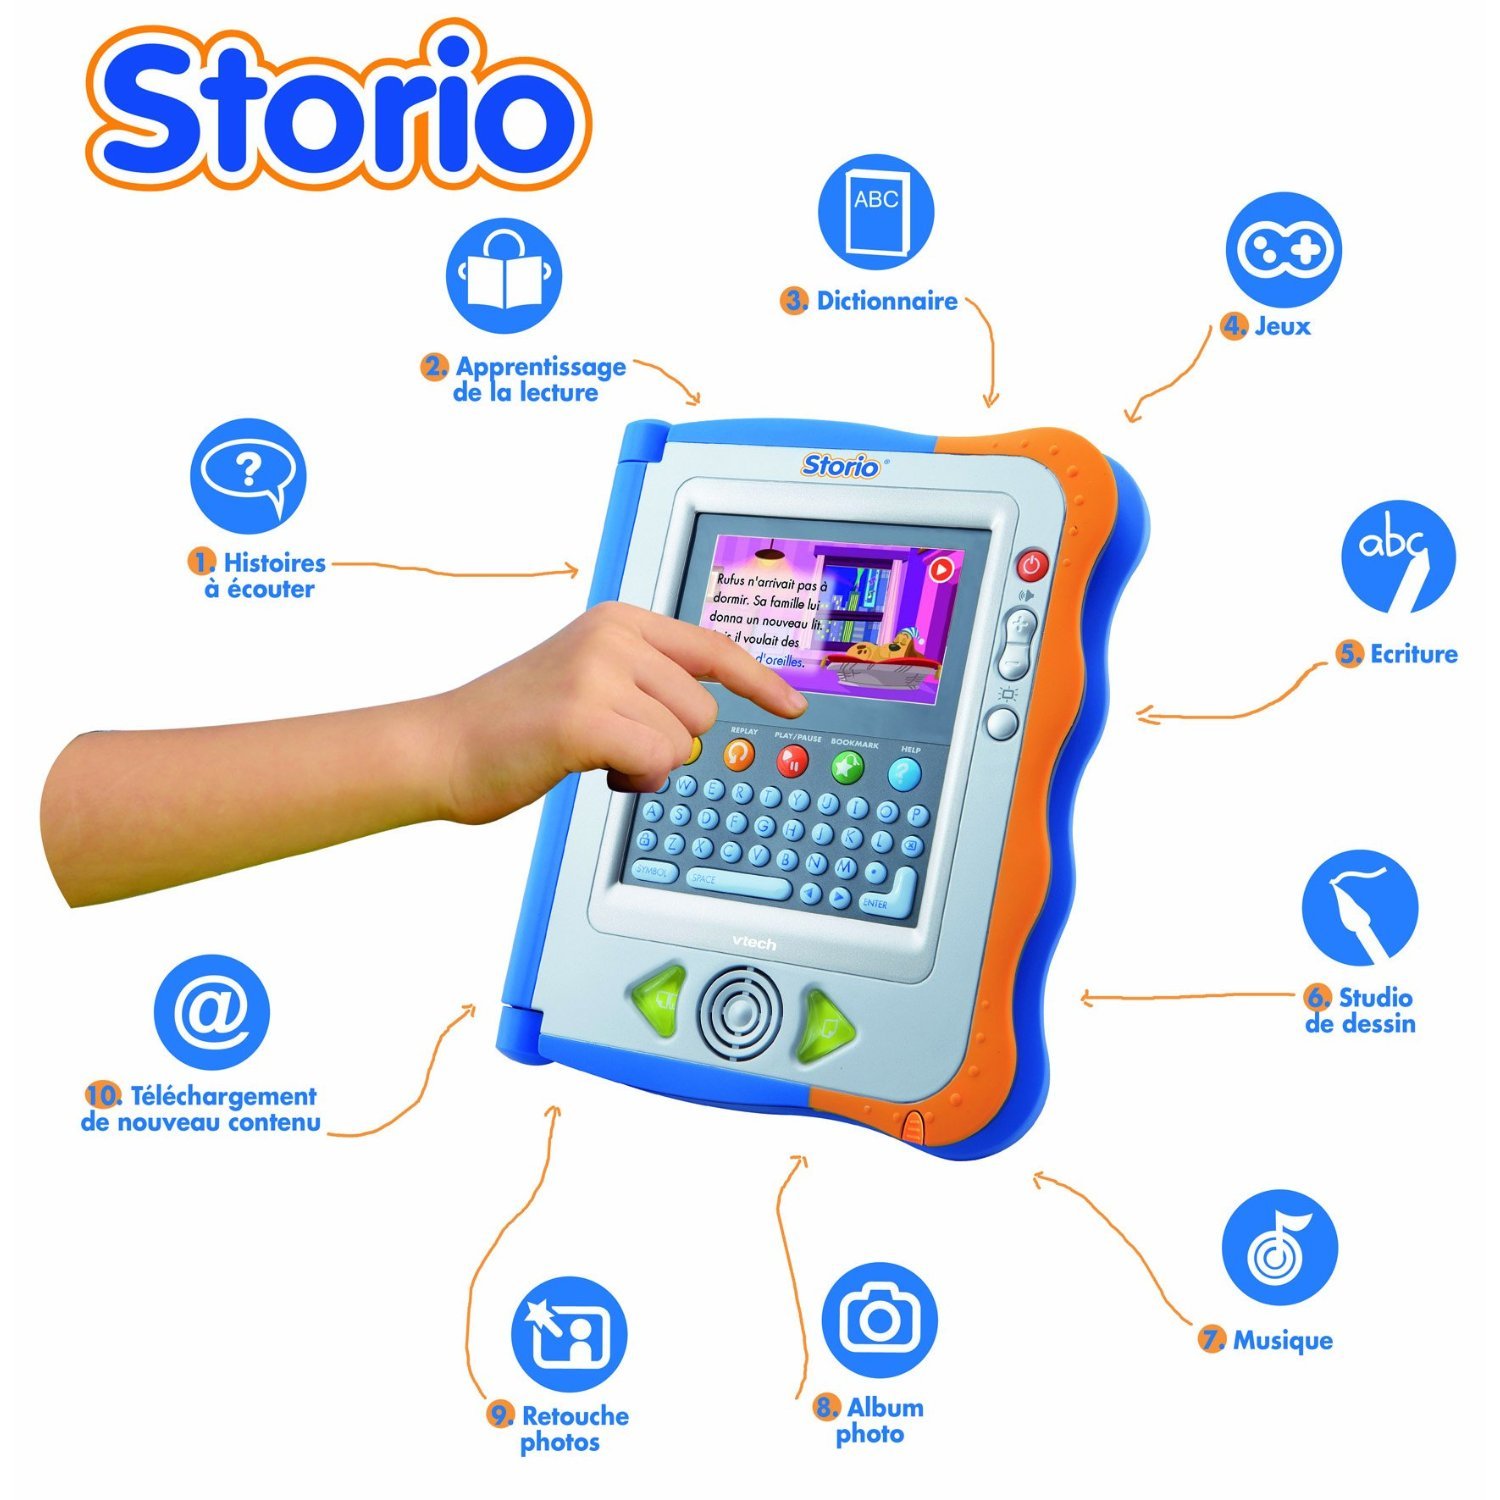 Vtech Storio La Tablette Tactile Educative Pour Les Juniors Au Prix De 69 98 Ilovetablette Com